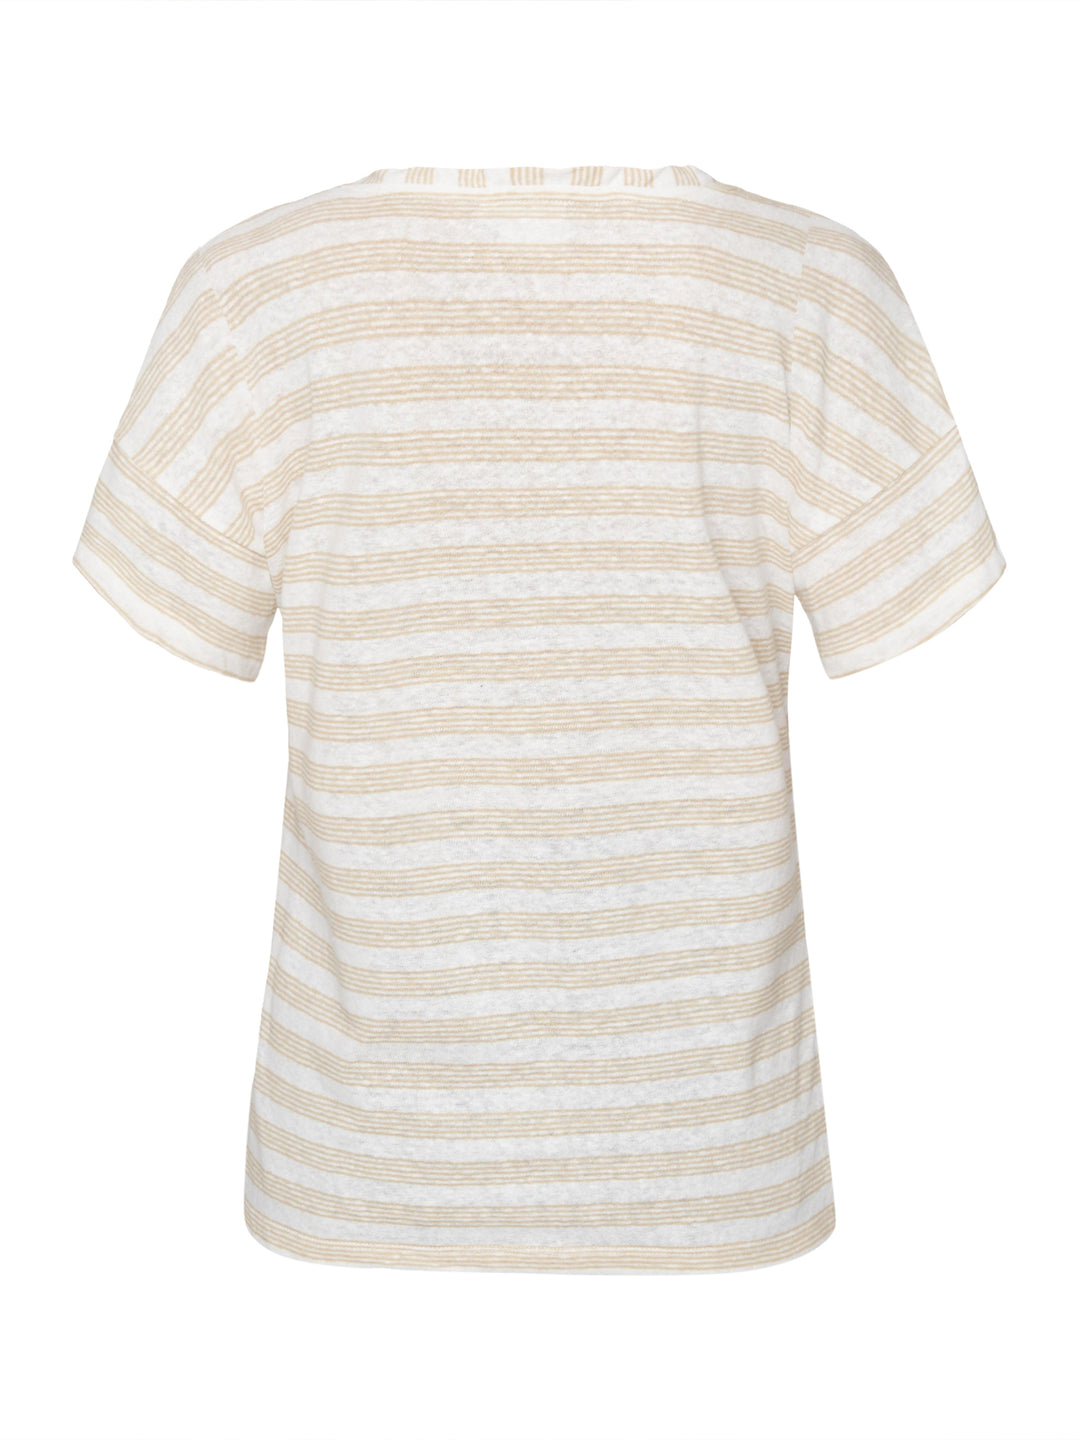 wit t-shirt gestreepte print - B. Coastline - 215508 - grote maten - dameskleding - kledingwinkel - herent - leuven